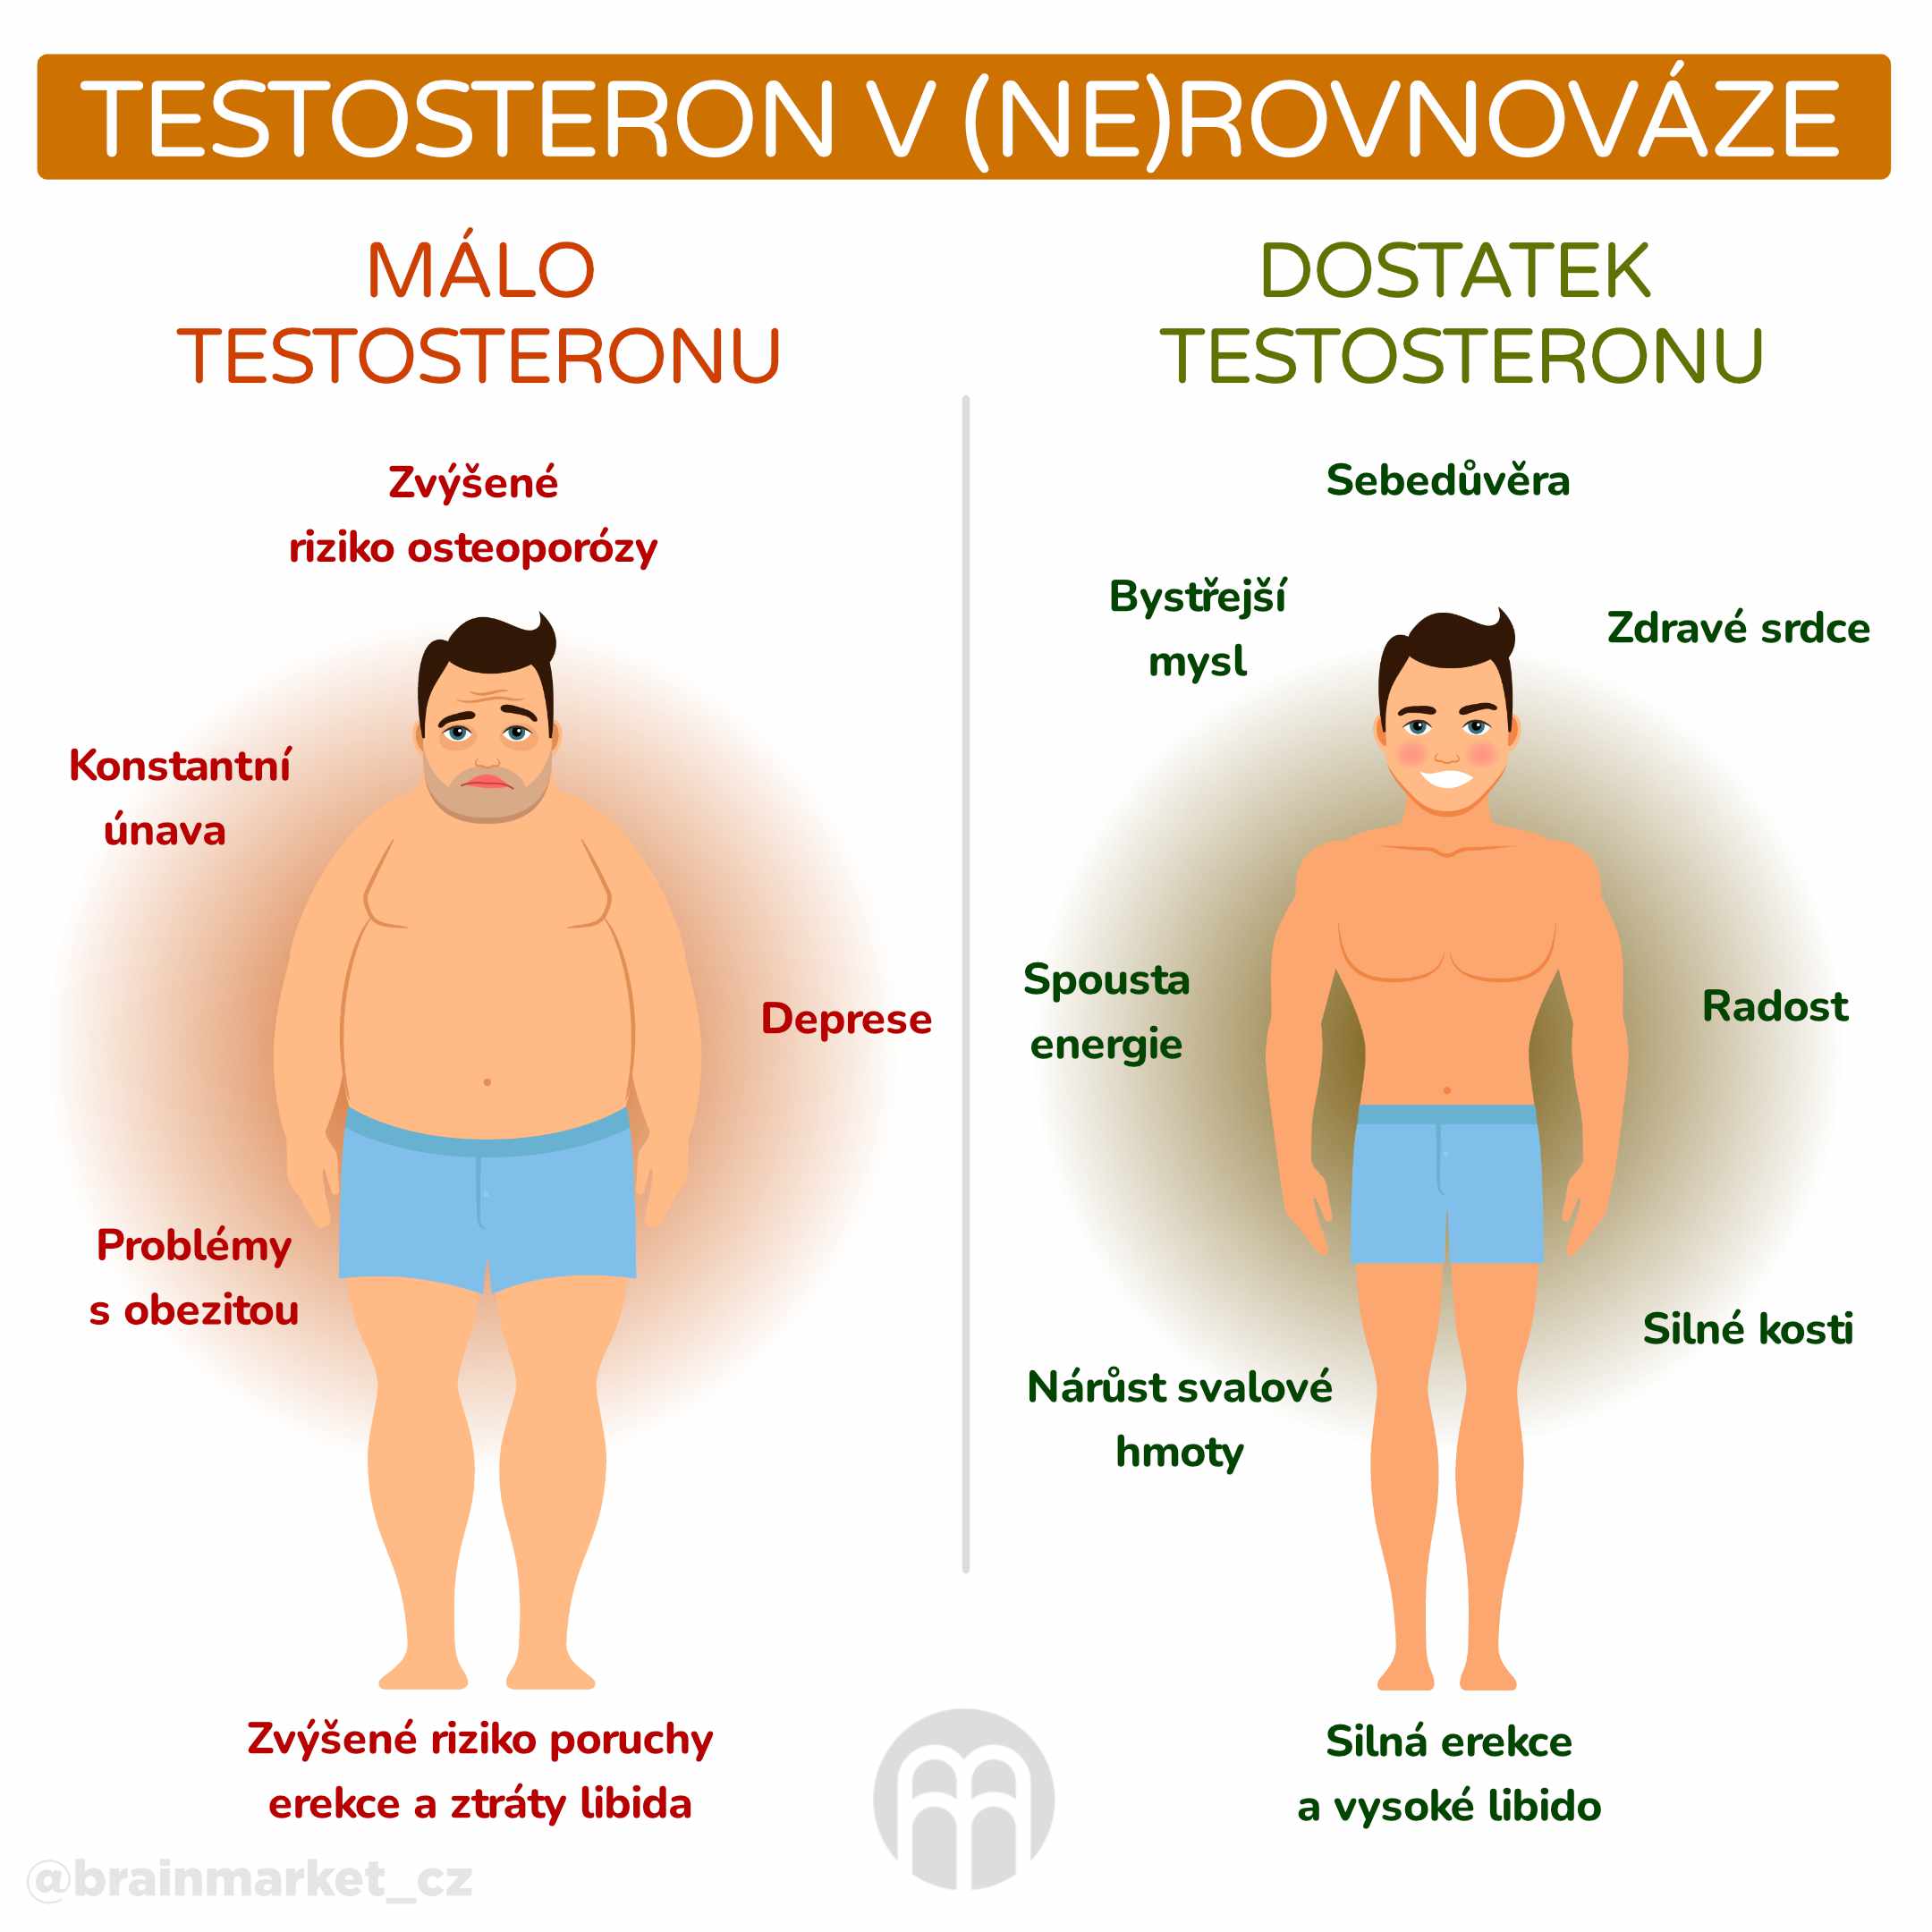 testosteron v ne rovnovaze_infografika_cz